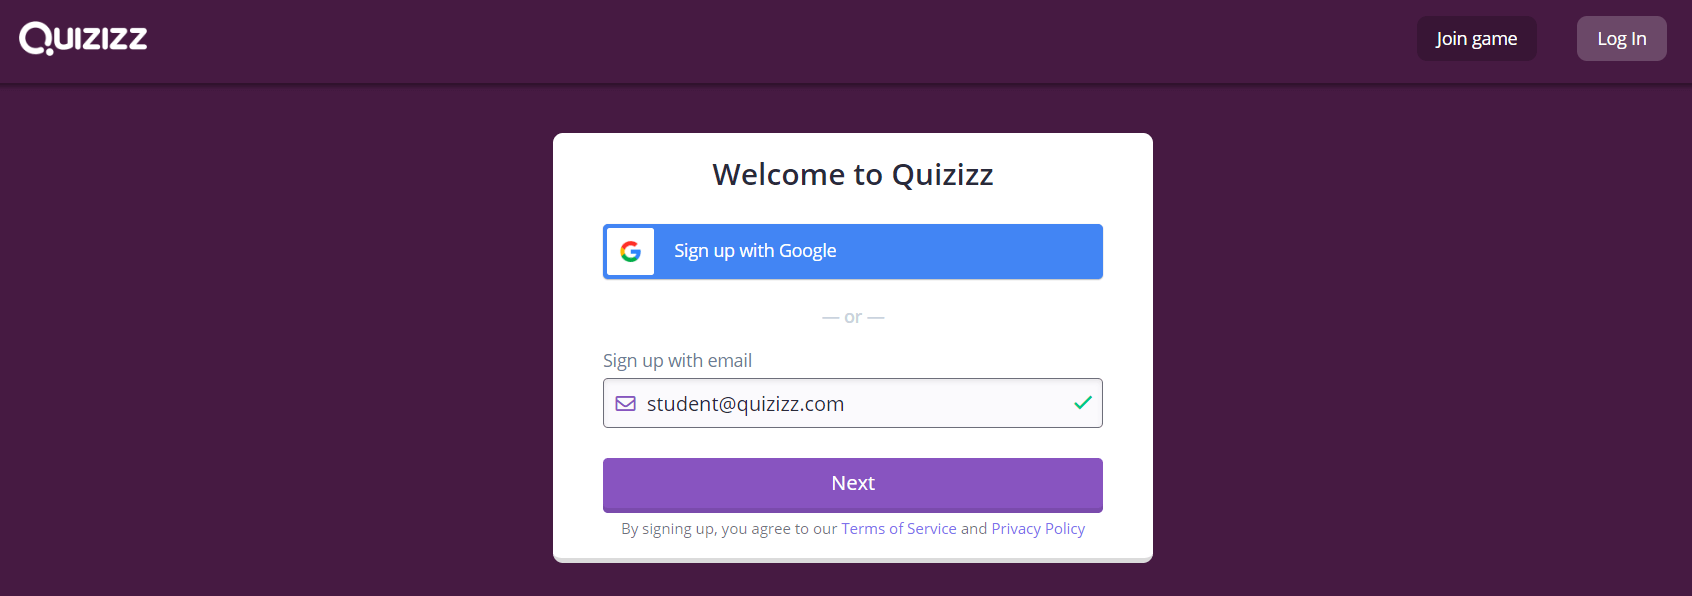 Chọn kiểu tài khoản Quizizz